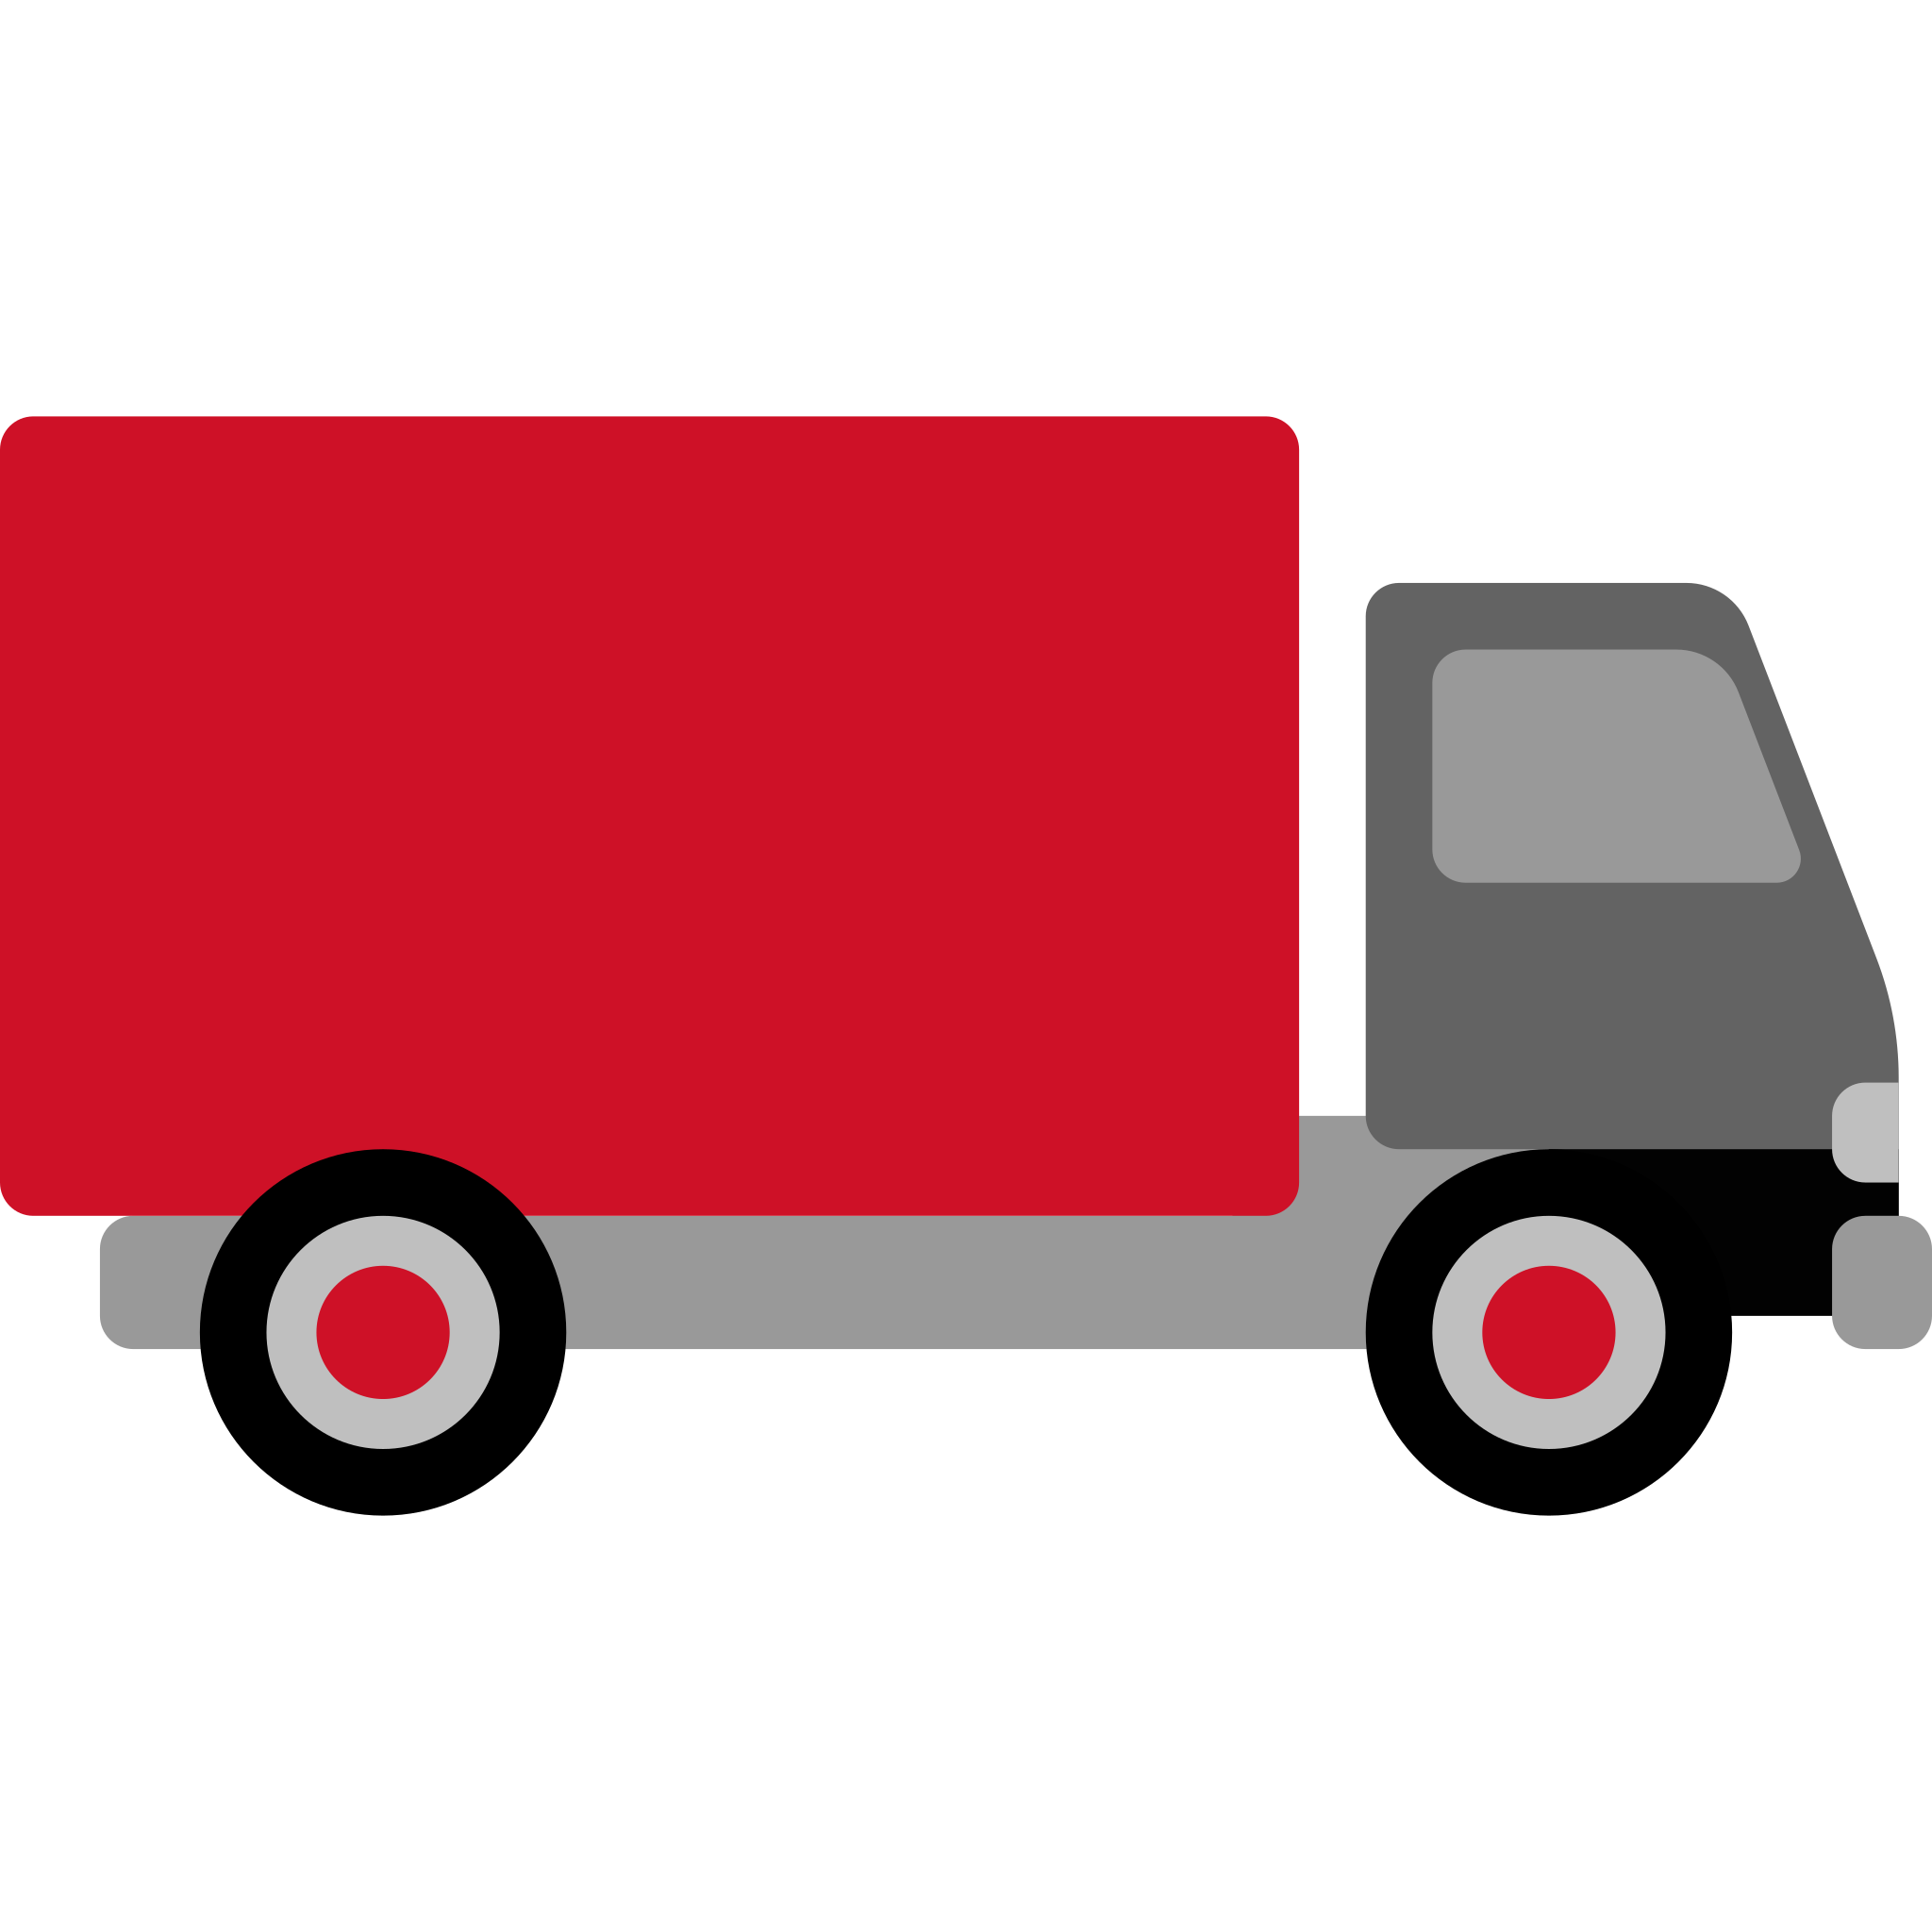 Delivery-truck.svg mang đến sự thuận tiện và nhanh chóng trong quá trình vận chuyển hàng hóa. Với hình ảnh động về xe đang vận chuyển, bạn sẽ có cái nhìn toàn diện và hiểu rõ hơn về quá trình giao nhận hàng hóa. Hãy cùng khám phá nhé.